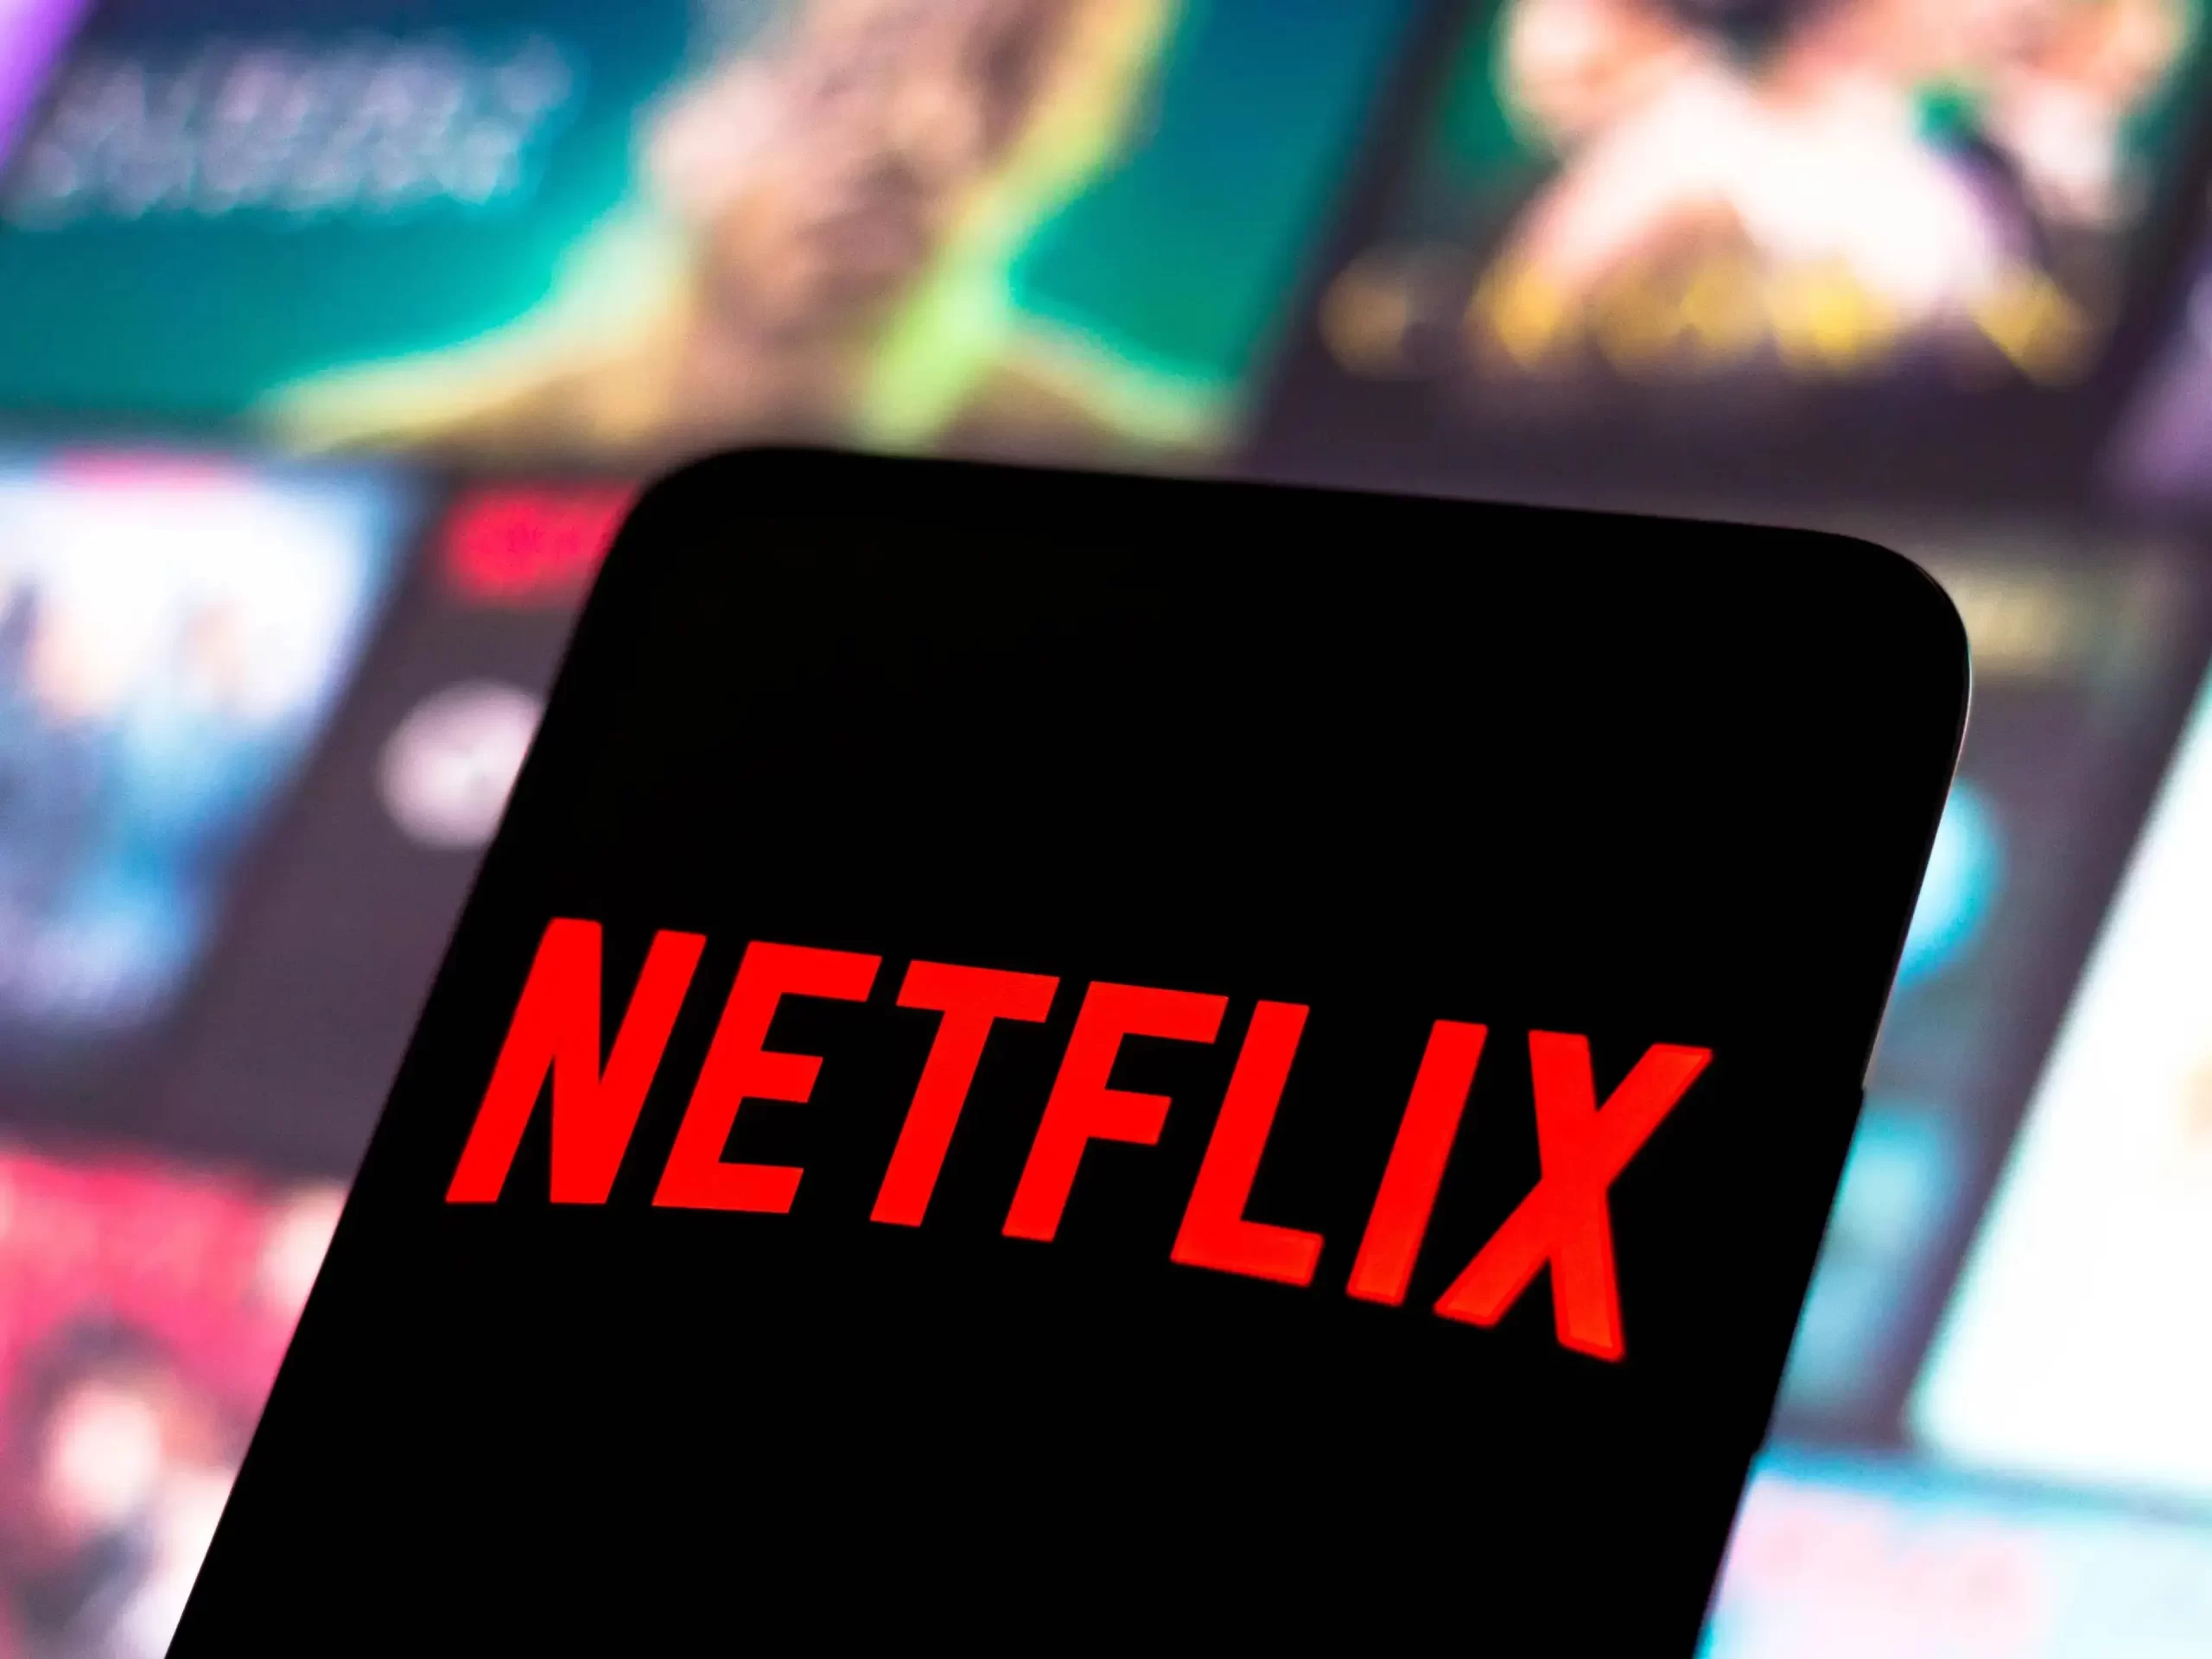 Netflix- Acciones caen 9.1% luego de cierre trimestral